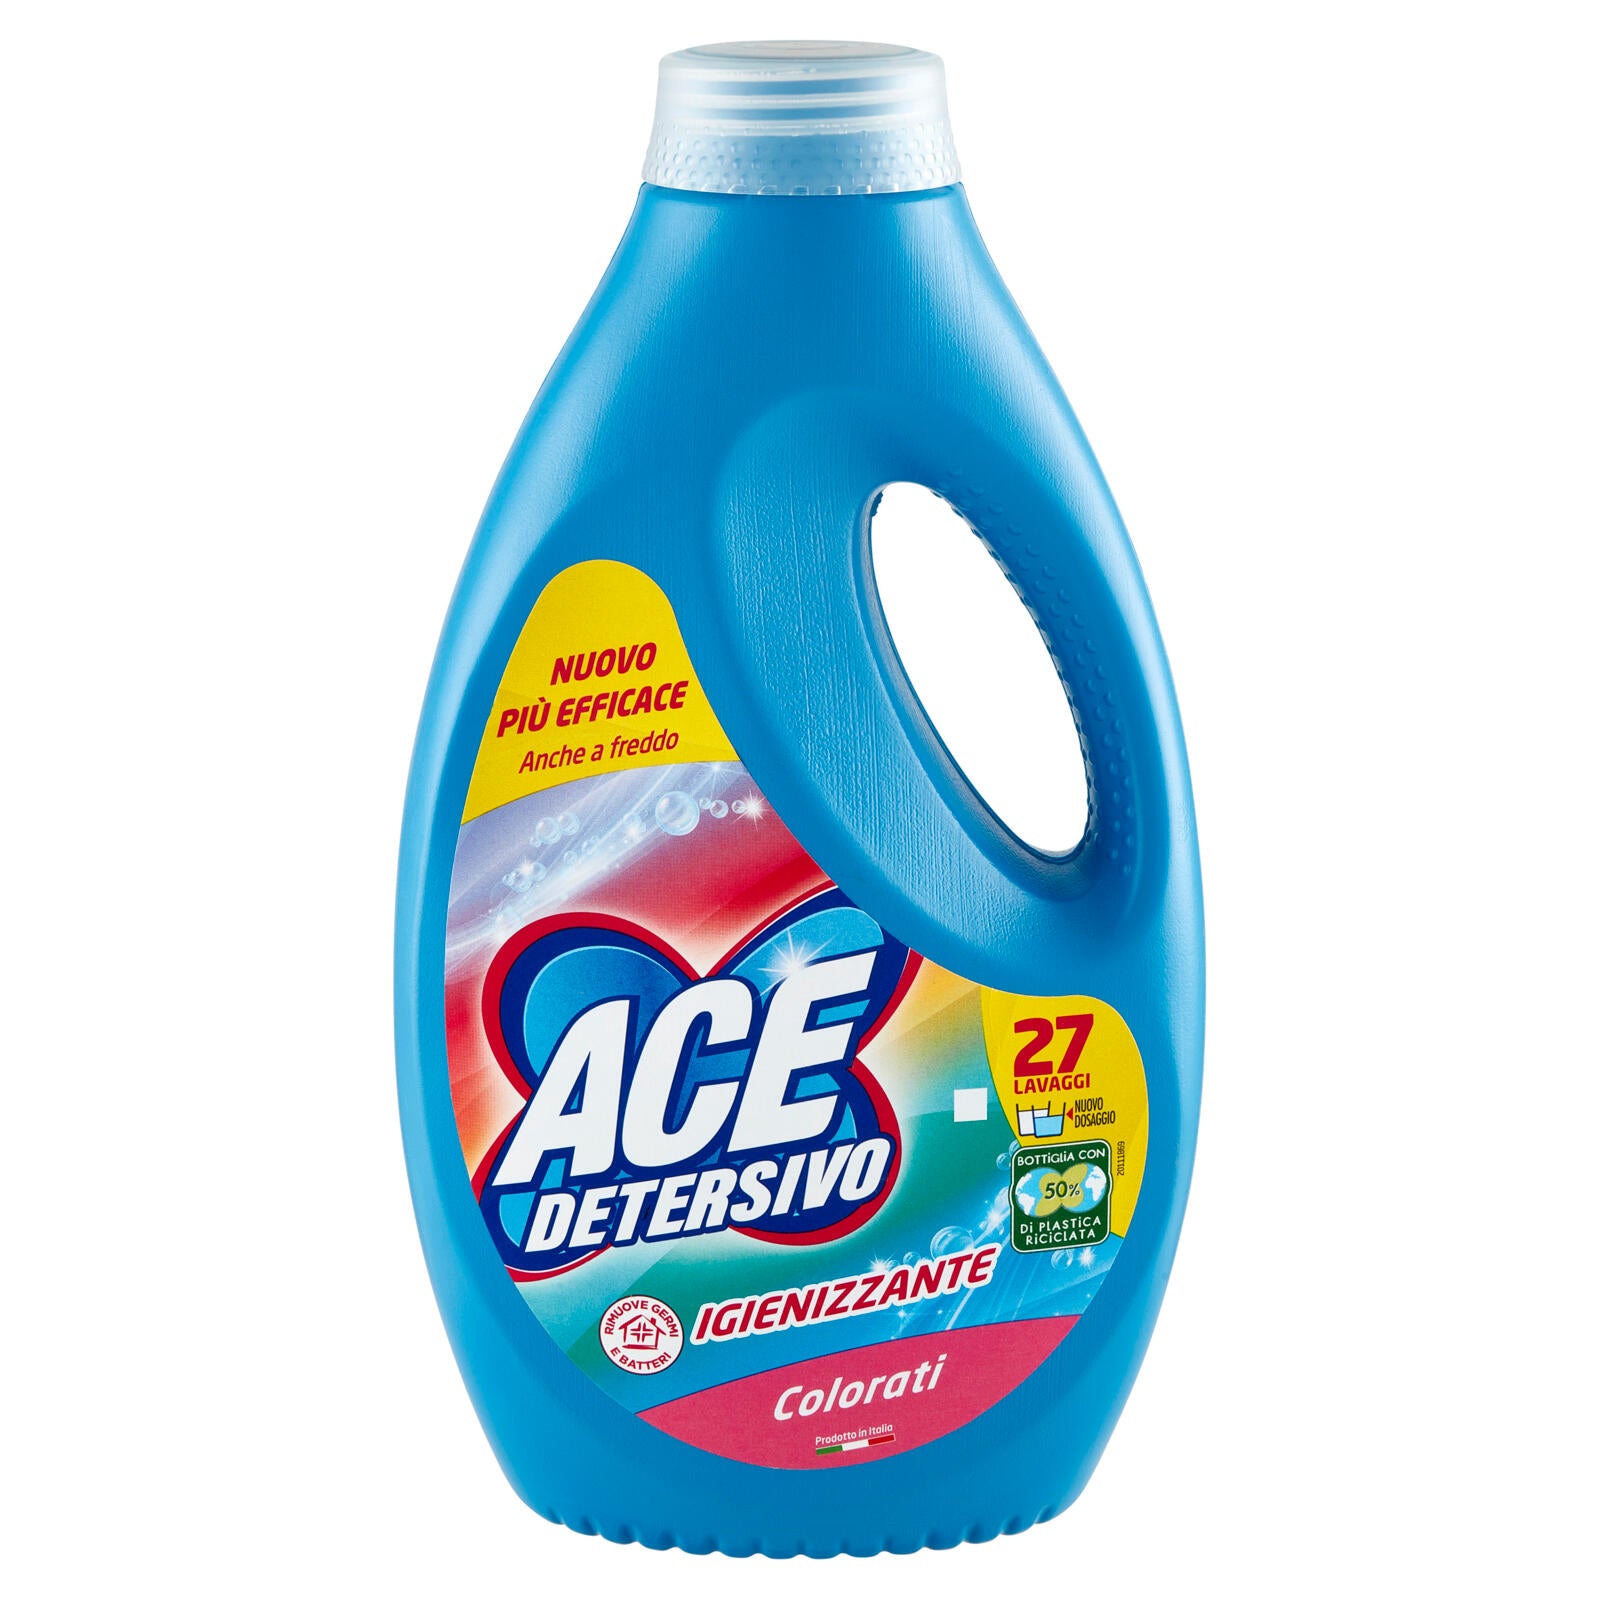 Ace Detersivo Igienizzante Colorati 27 Lavaggi 1350 ml